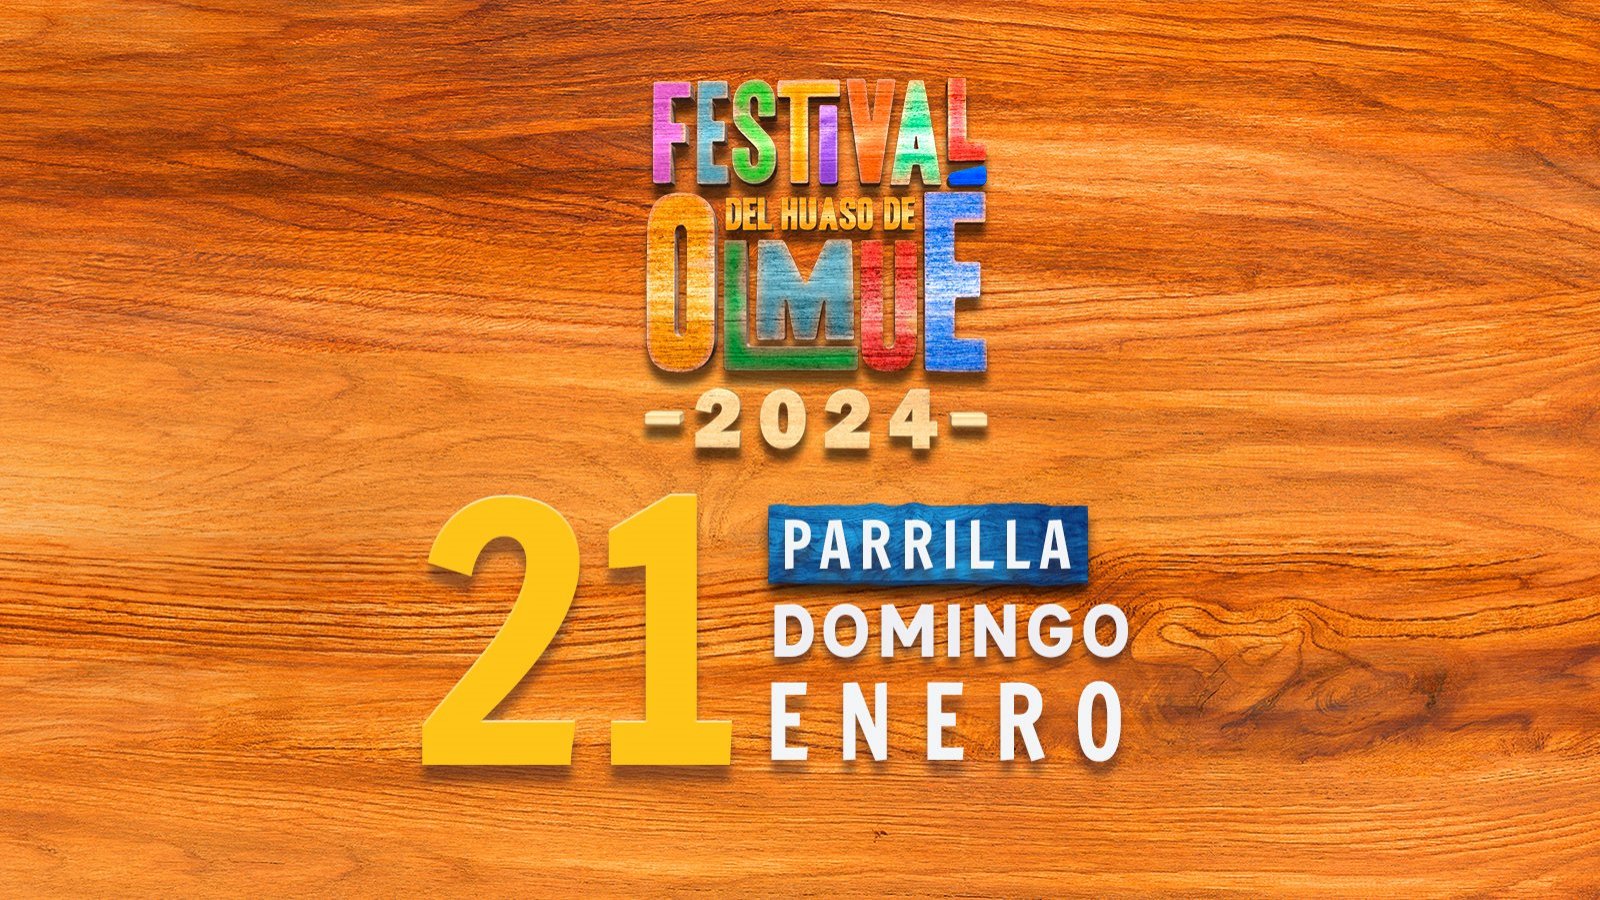 Festival del huaso de Olmué 2024 domingo 21 de enero.